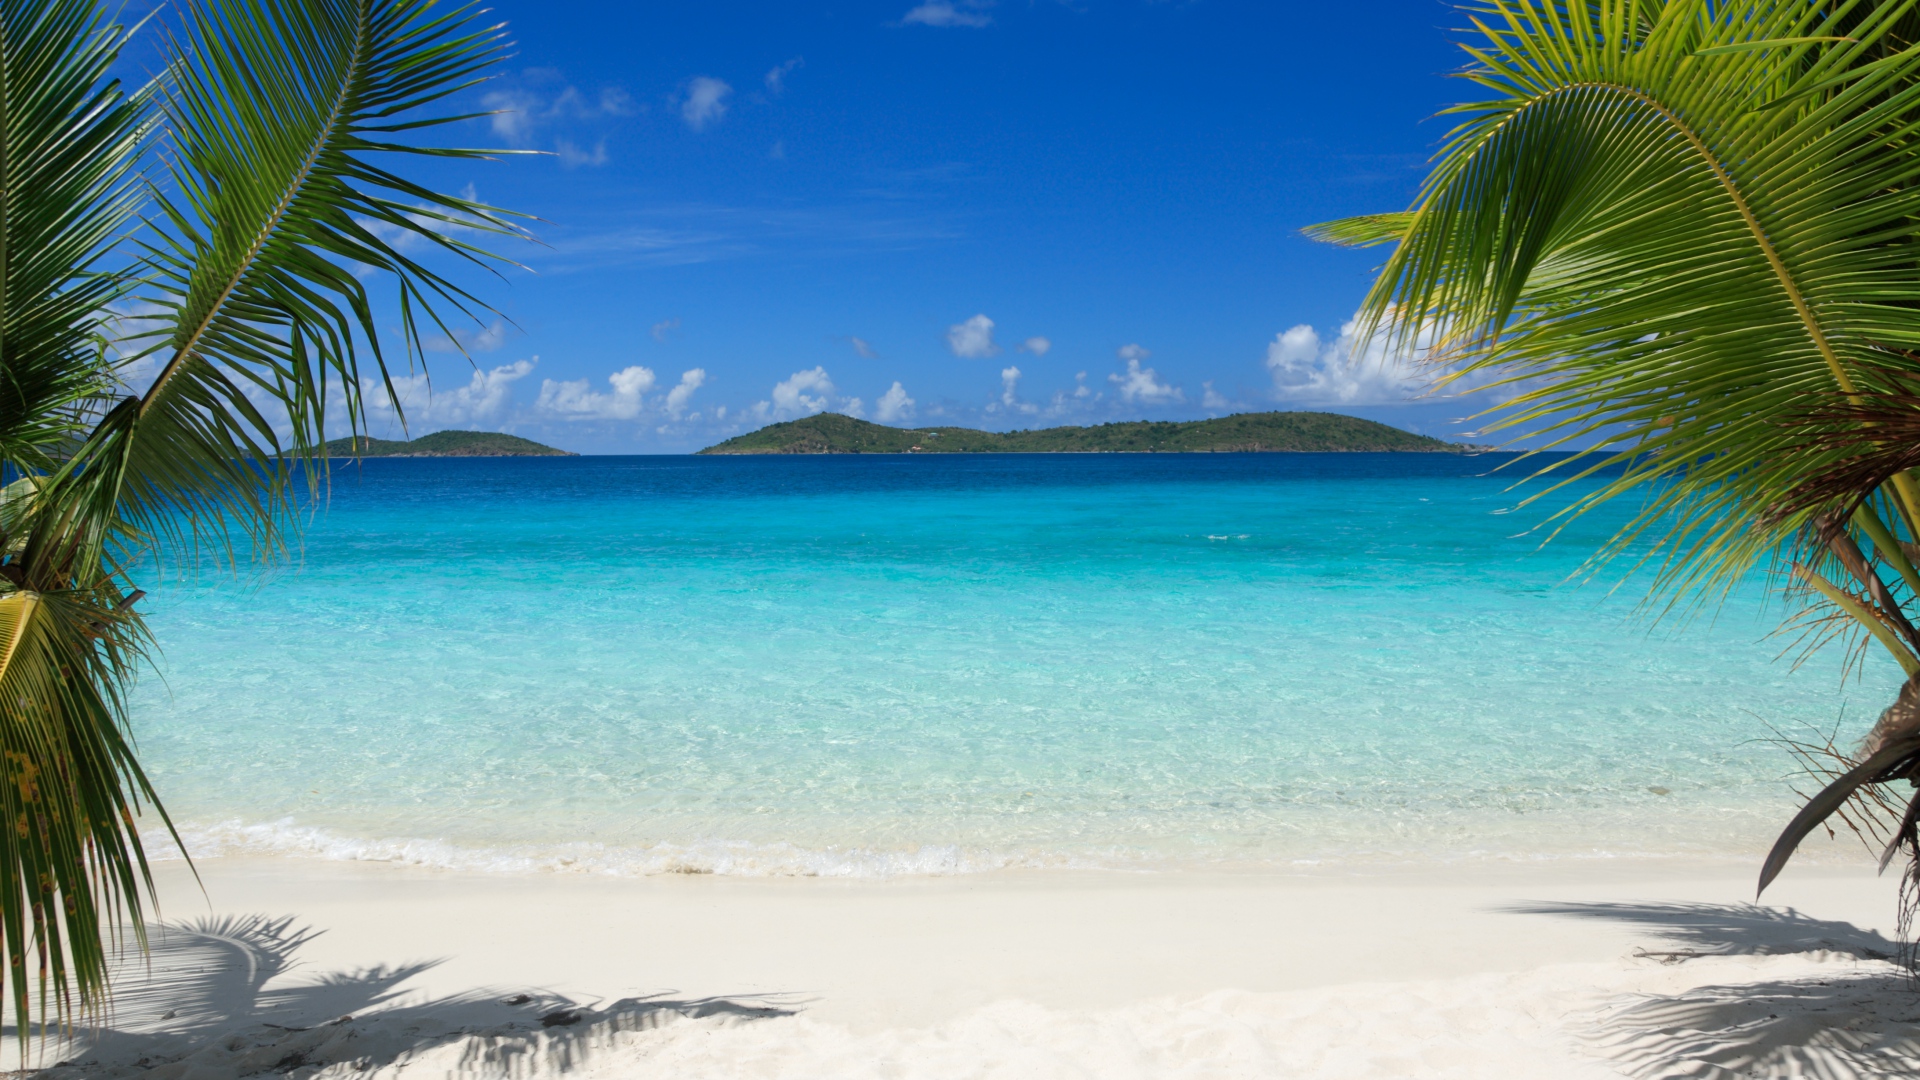 Virgin Islands Beach , HD Wallpaper & Backgrounds